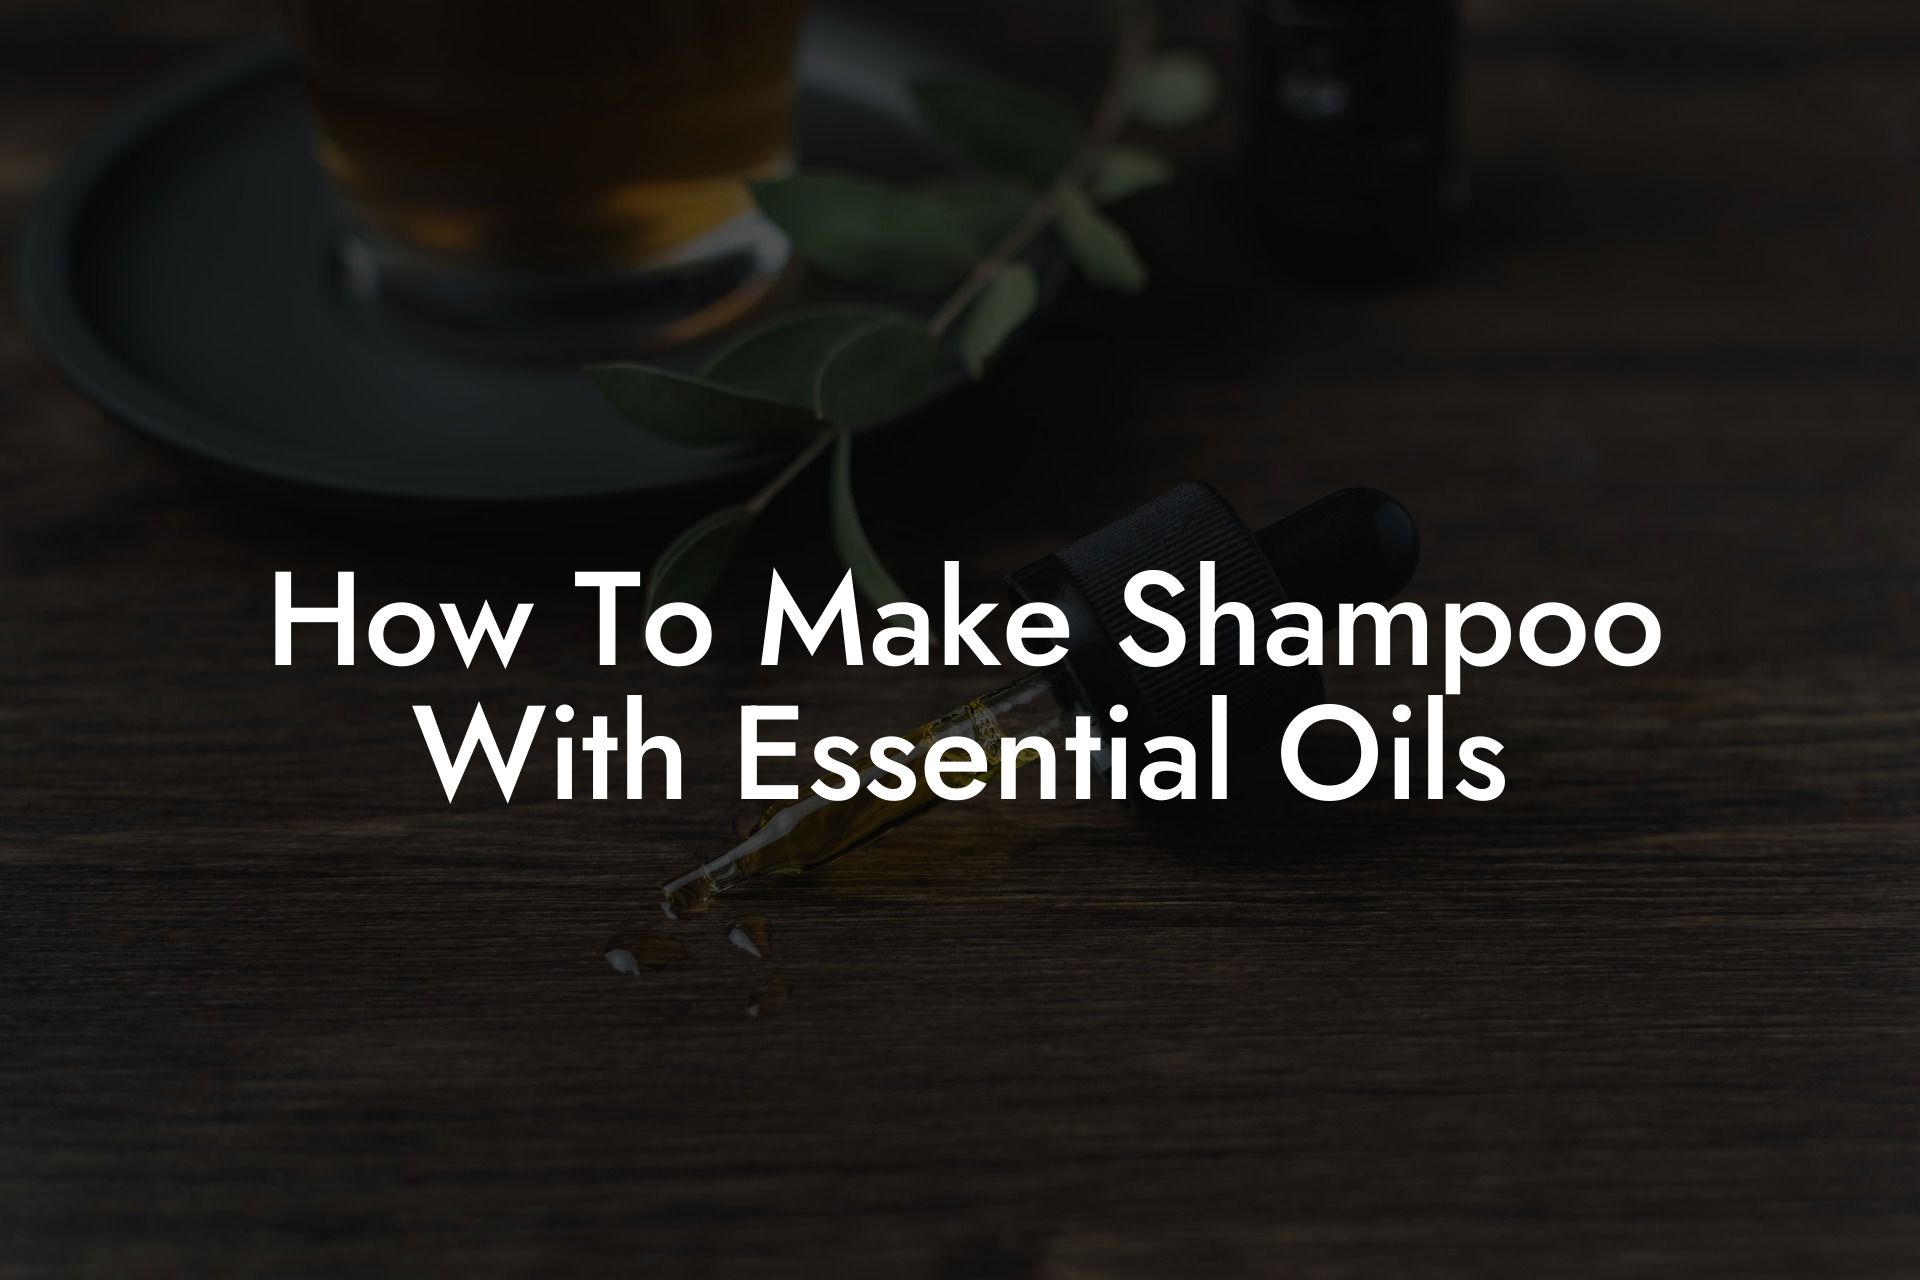 How To Make Shampoo With Essential Oils